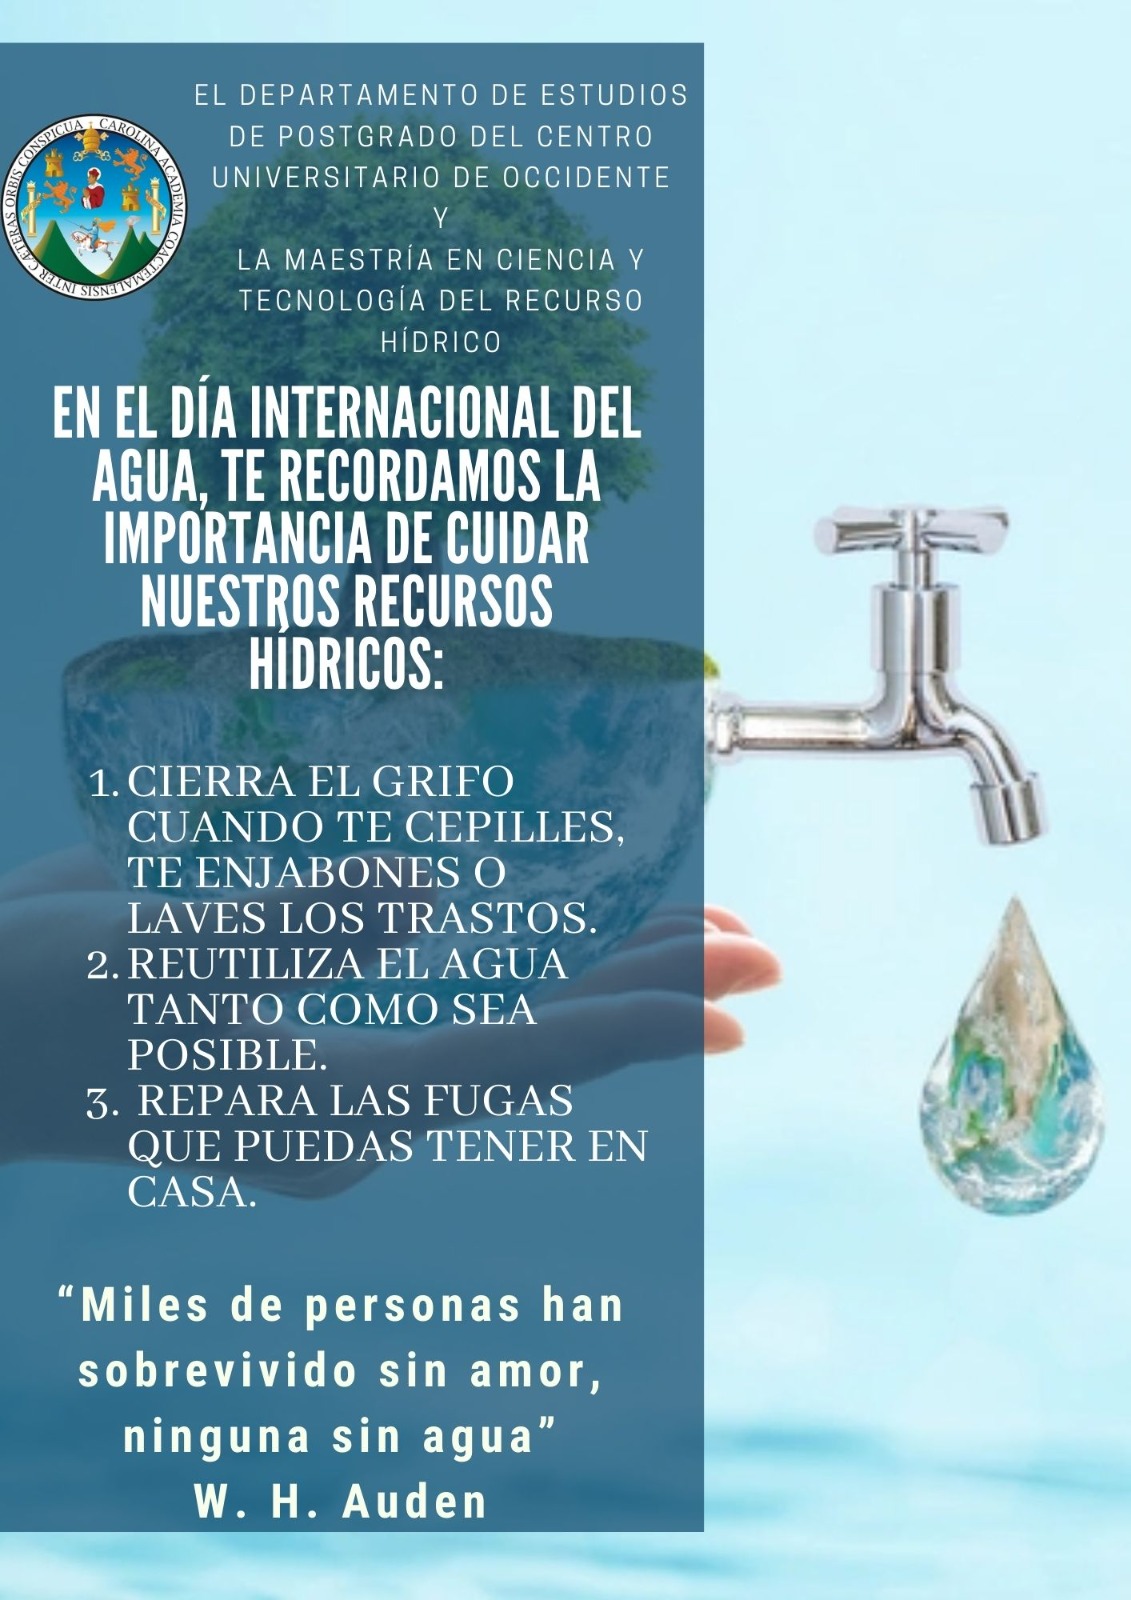 Día Internacional del Agua